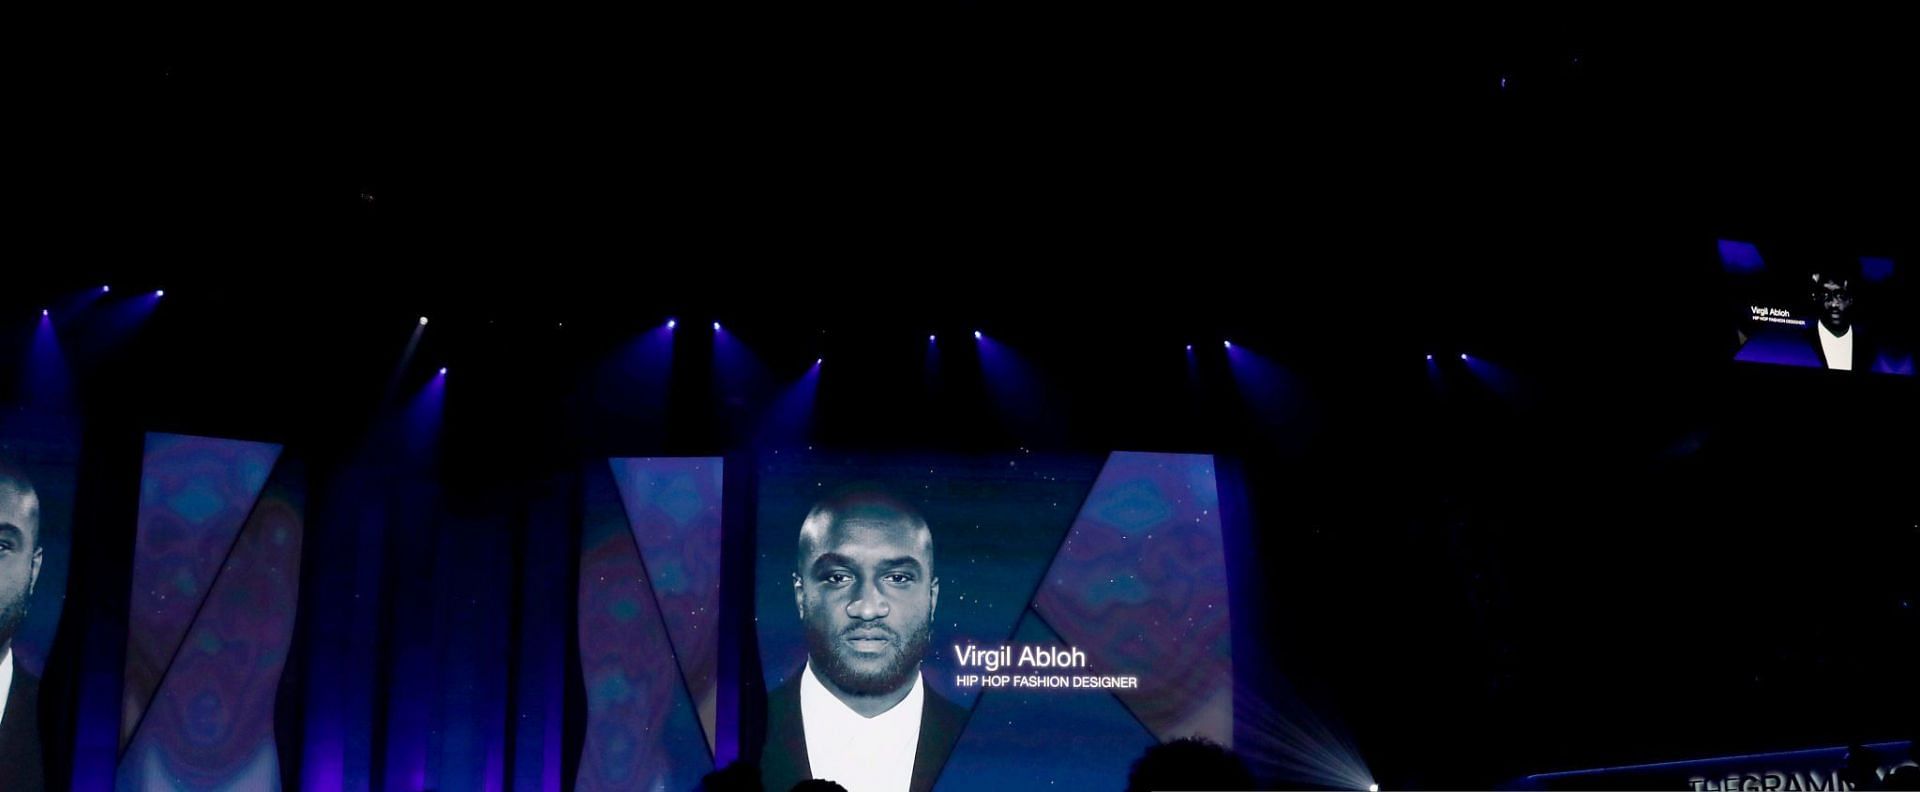 2022 Grammys criticized for calling Virgil Abloh a hip-hop designer